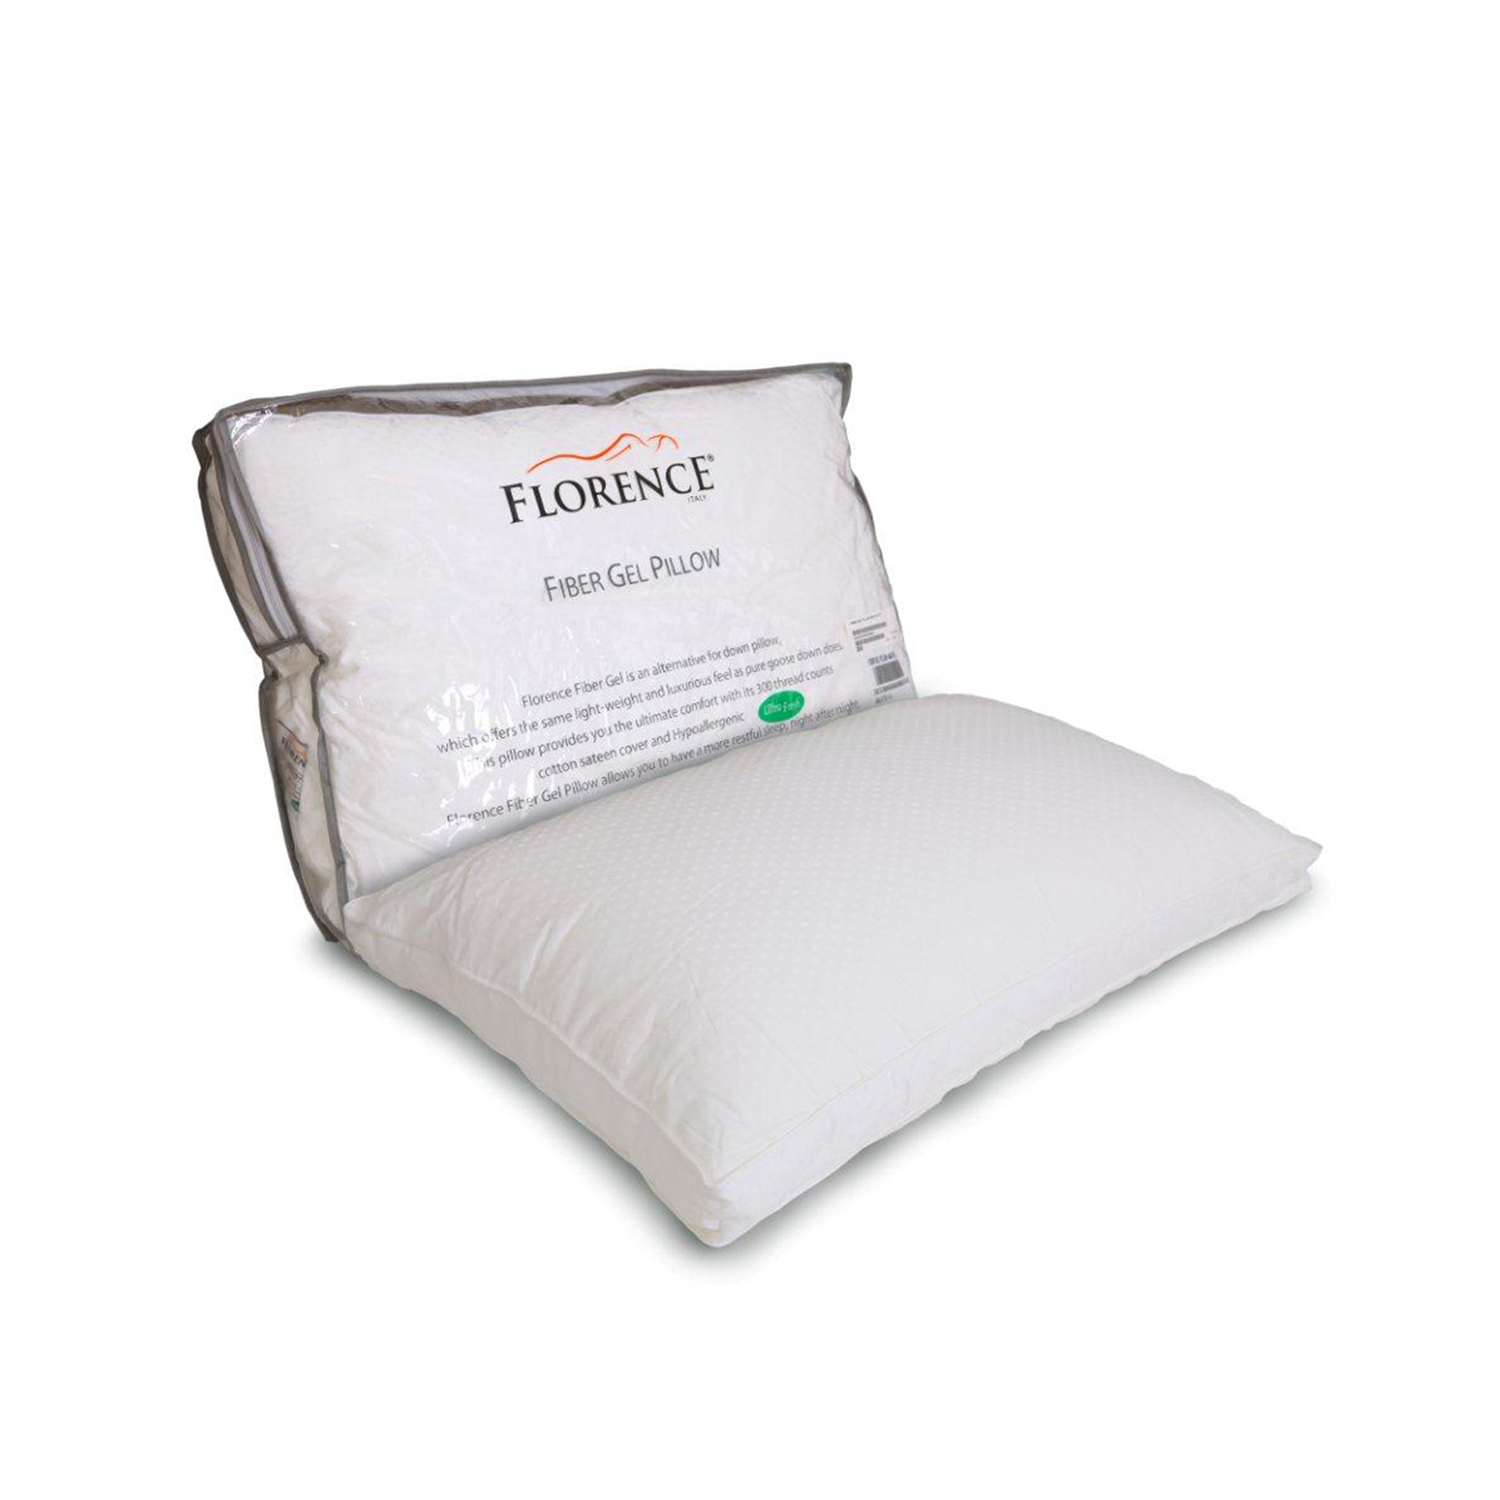 Florence Fiber Gel Pillow 46X72 - Bantal Tidur